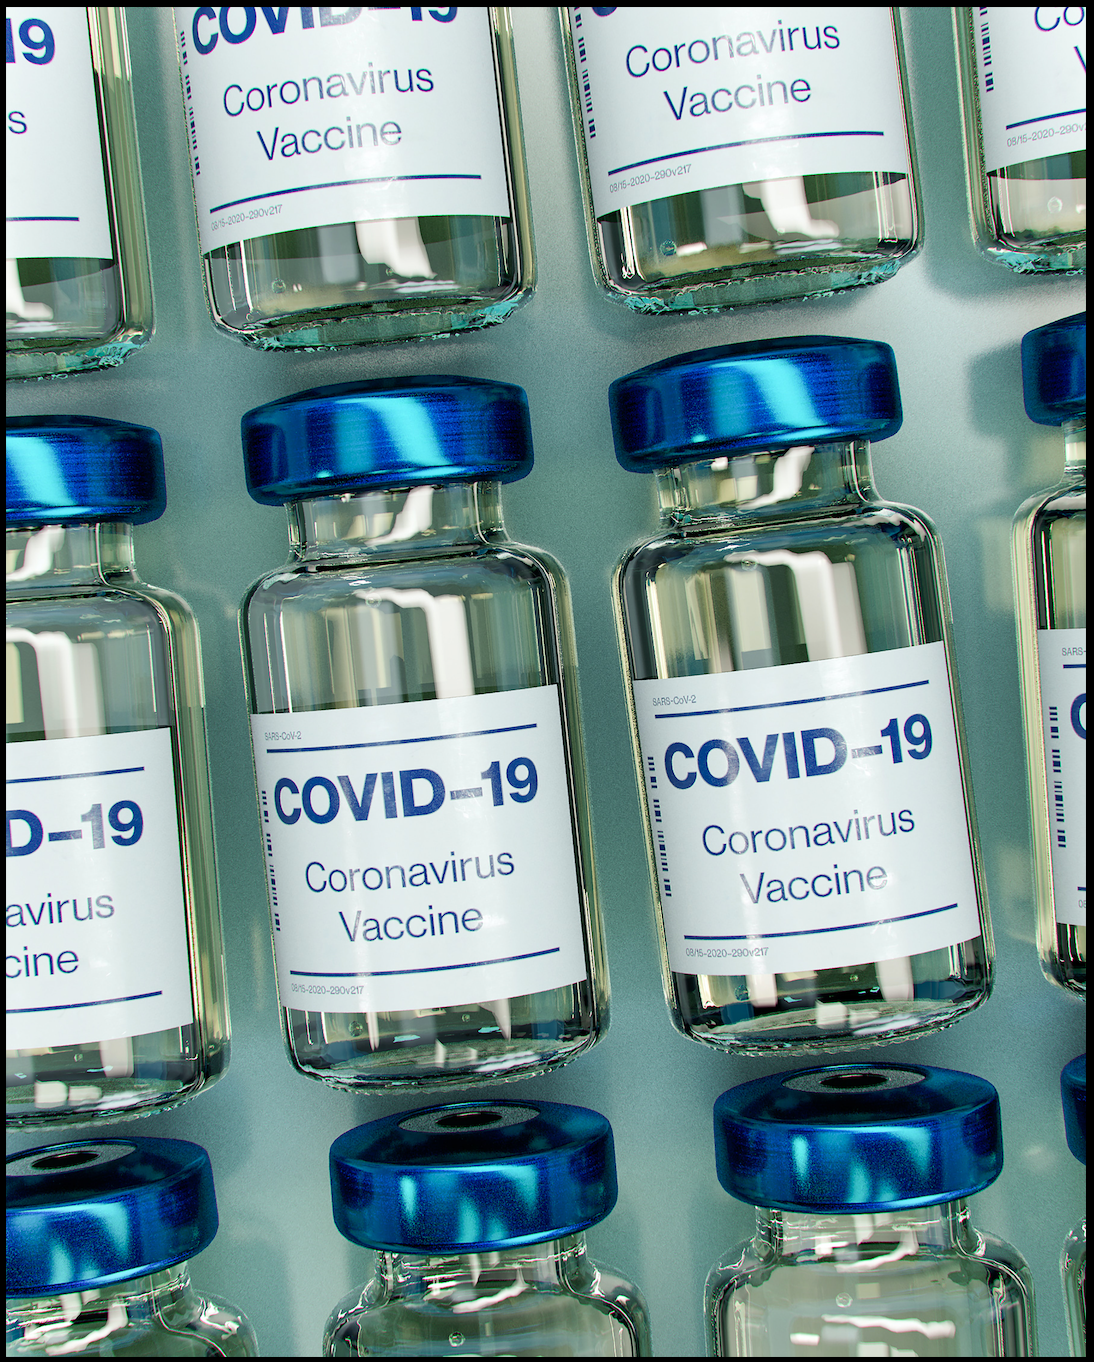 Южноафриканский производитель вакцины COVID-19 получает финансовую поддержку в размере 600 млн евро